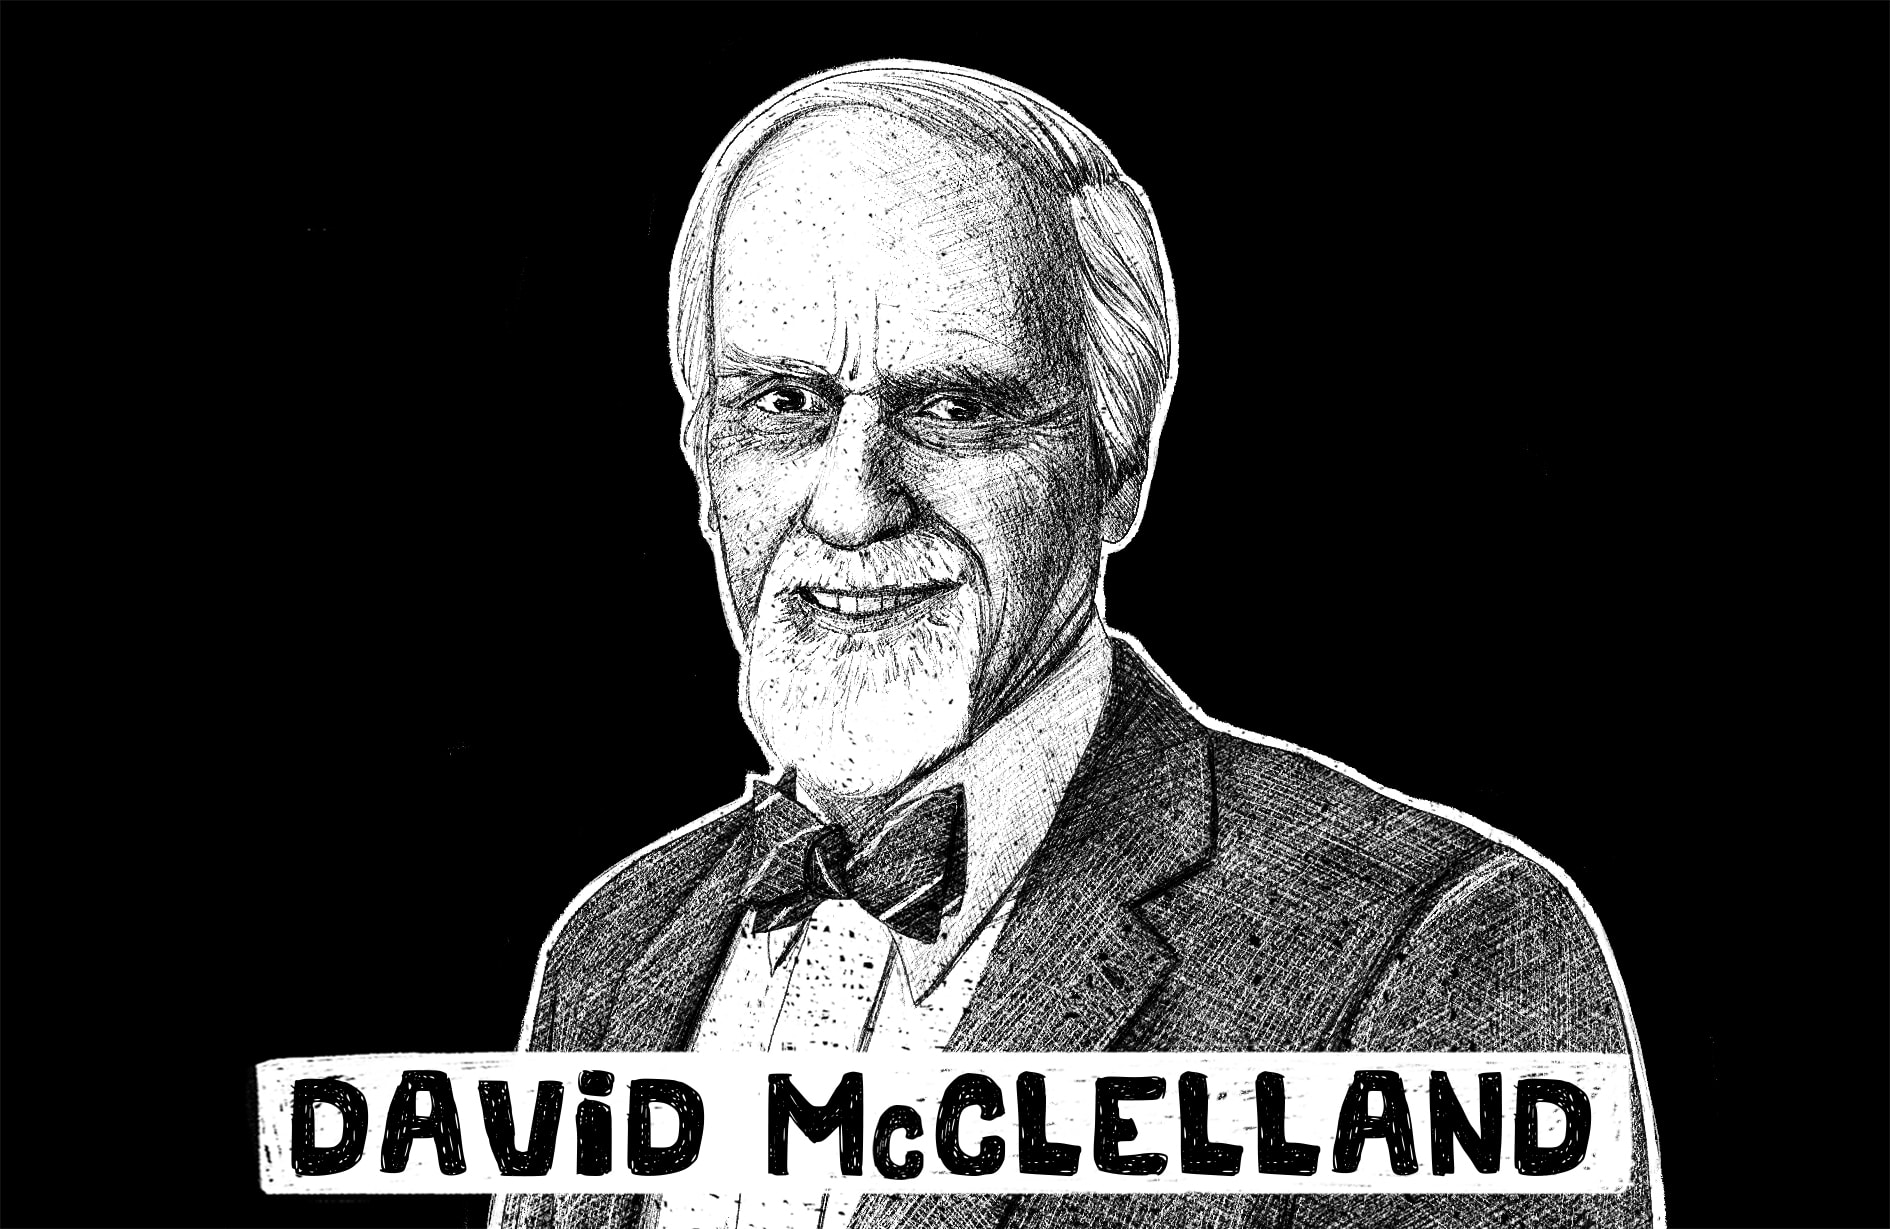 The David McClelland Theory